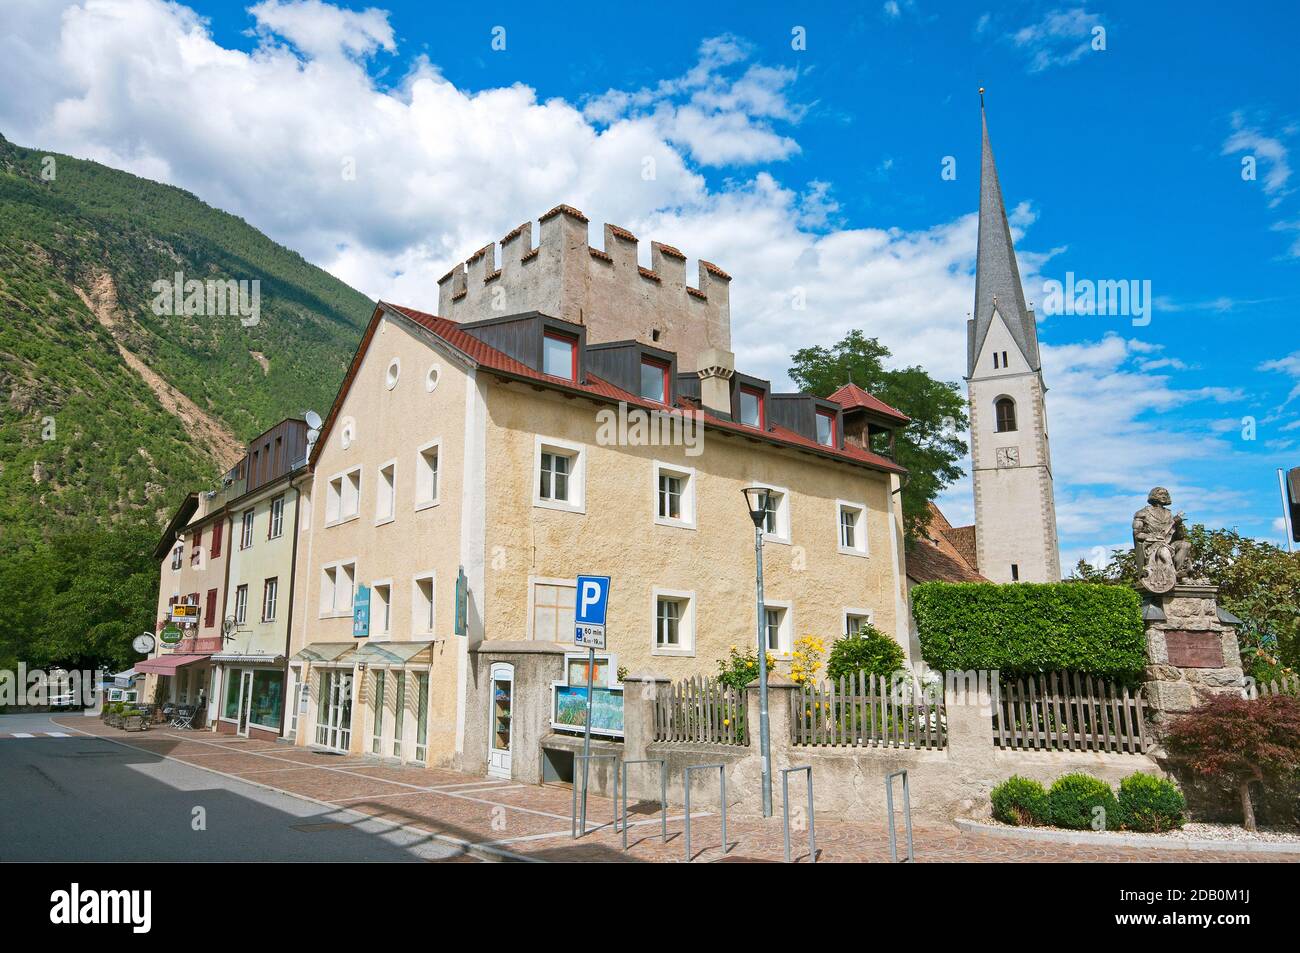 Château de Laces et beffroi de l'église SS Pietro e Paolo, Vallée de Venosta (Vinschgau), Bolzano, Trentin-Haut-Adige, Italie Banque D'Images